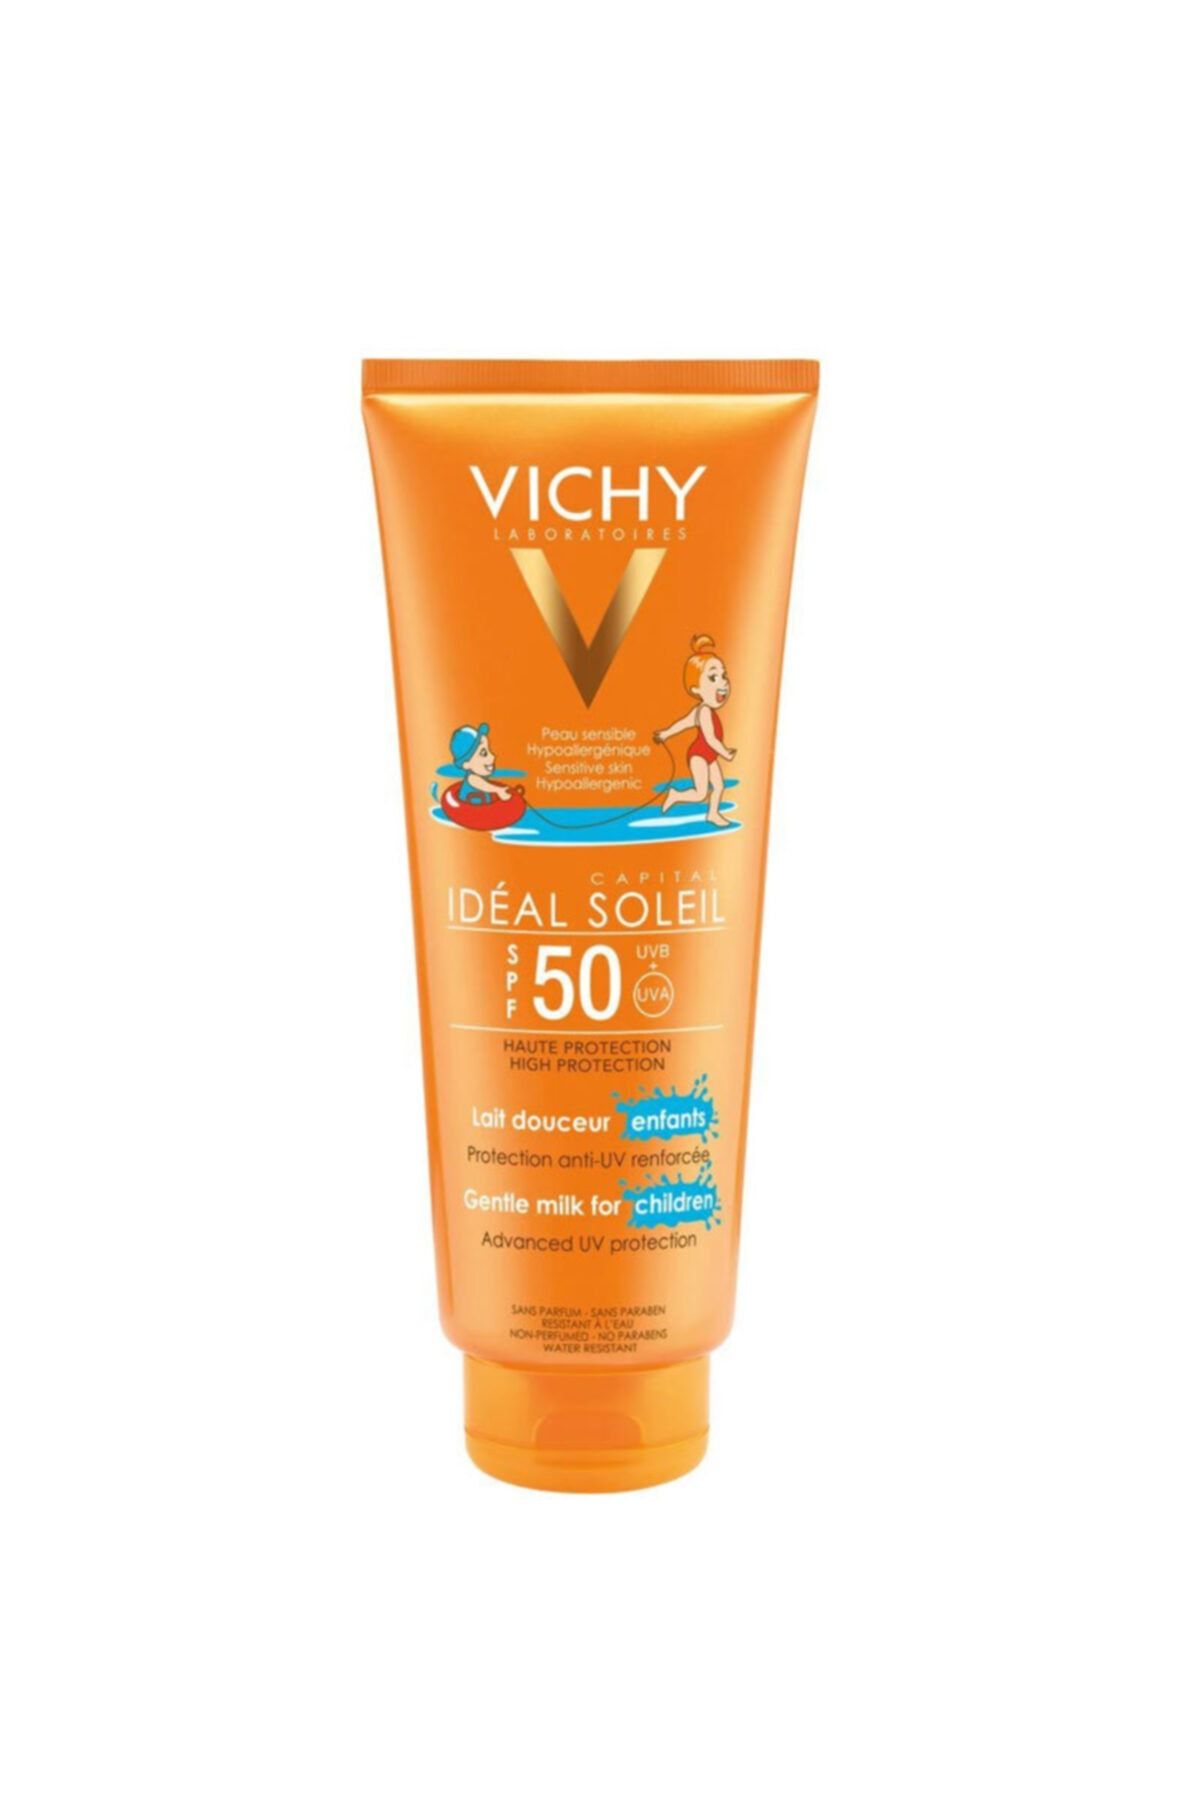 Vichy Capital Ideal Soleil Spf50+ Yüz Ve Vücut Güneş Sütü 300ml Çocuklar İçin